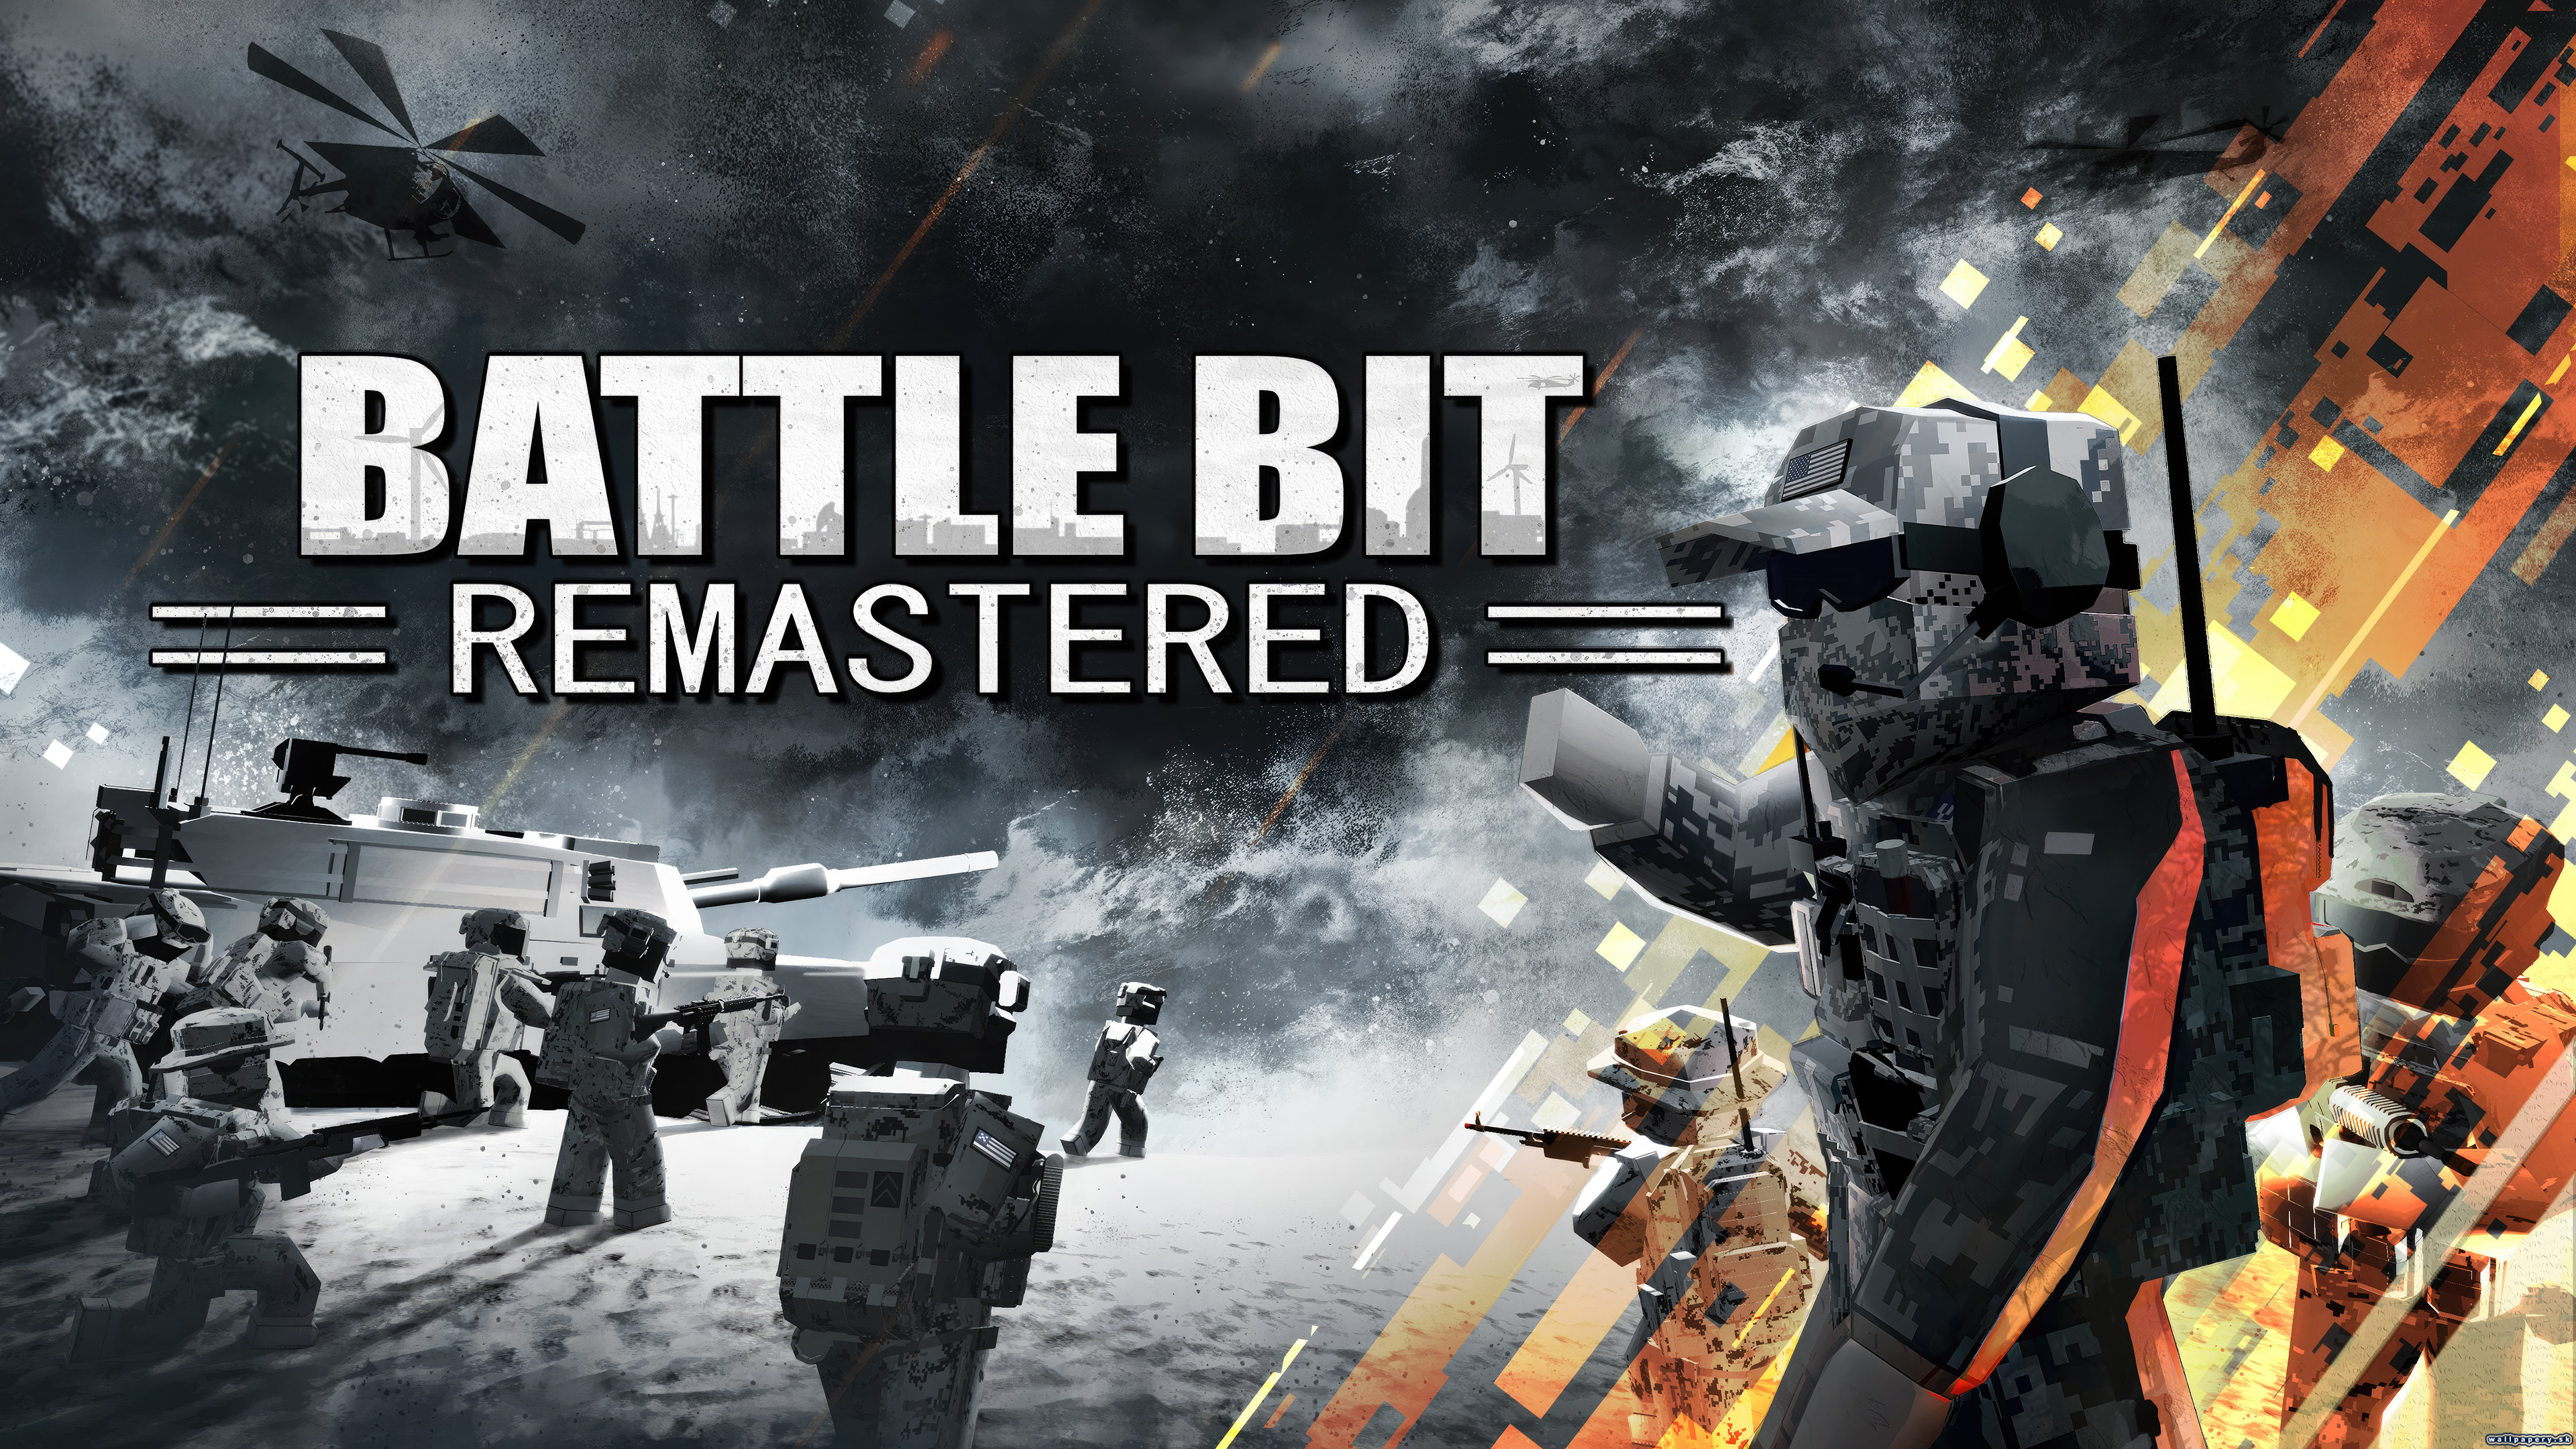 BattleBit Remastered - wallpaper 1